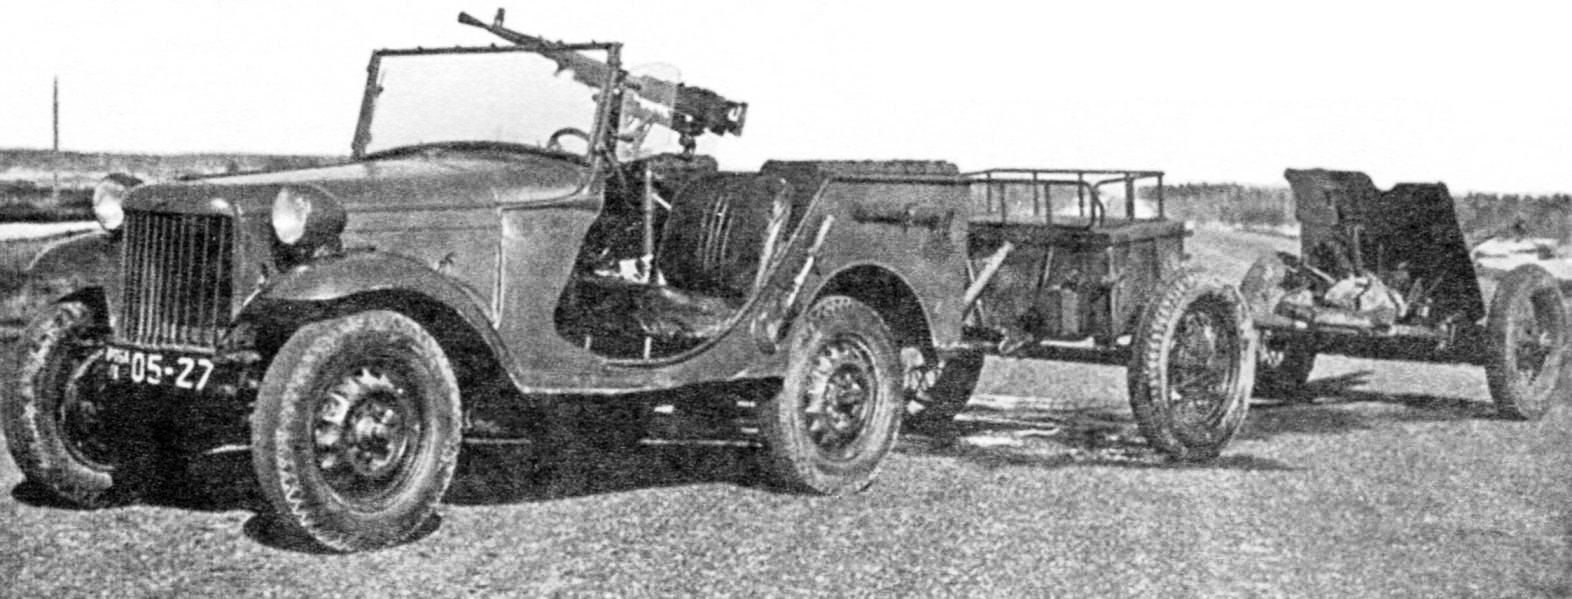 Опытный ГАЗ-64 с пулемётом -буксировщик противотанковой 45-мм пушки с передком для боеприпасов